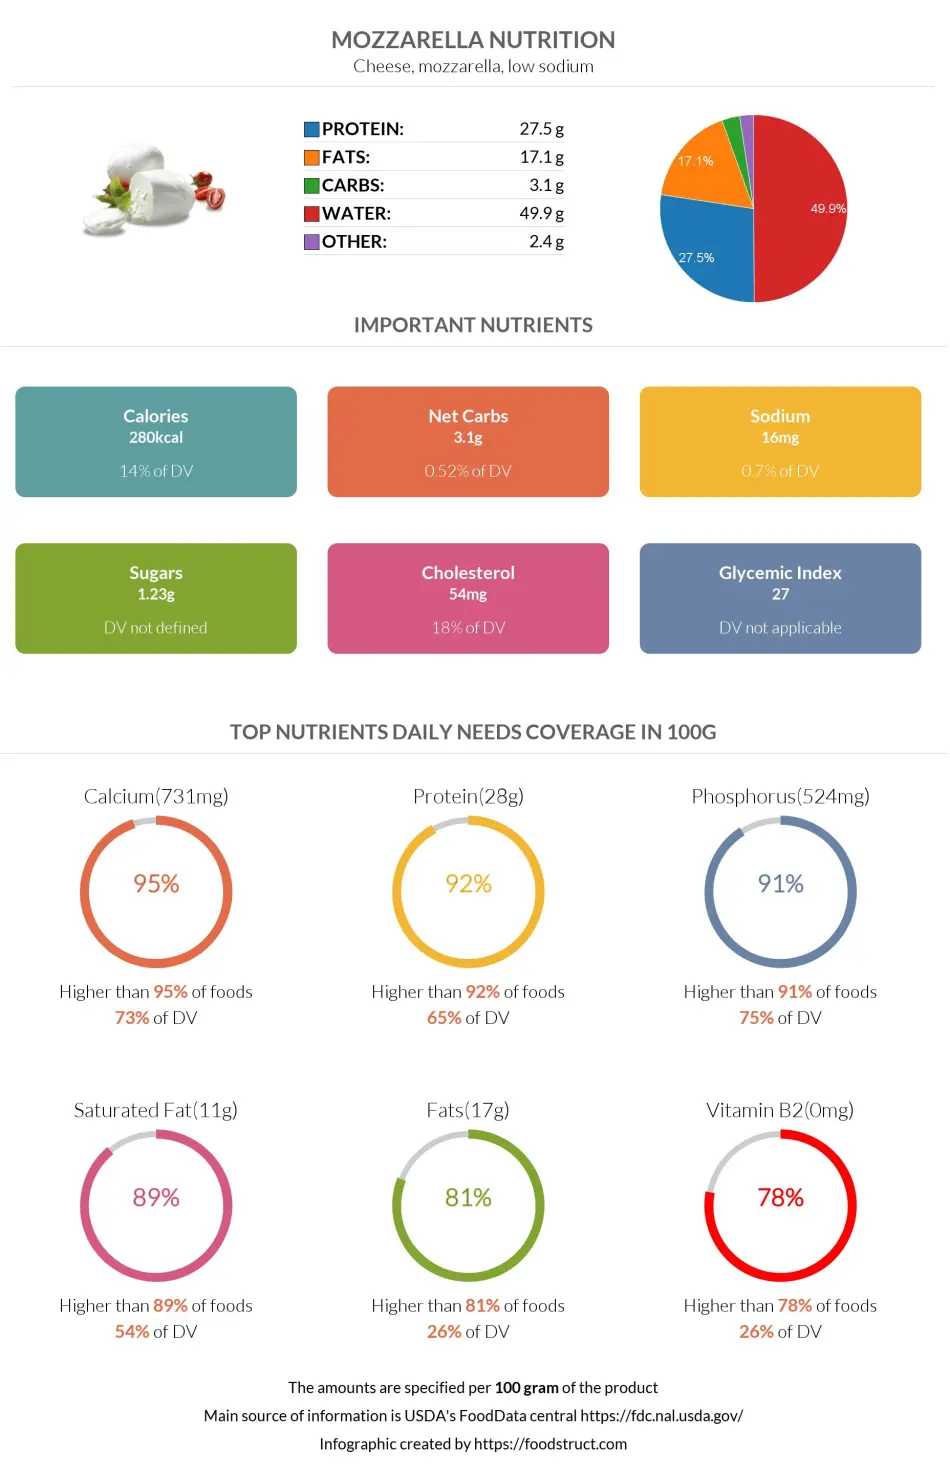 Mozzarella nutrition infographic